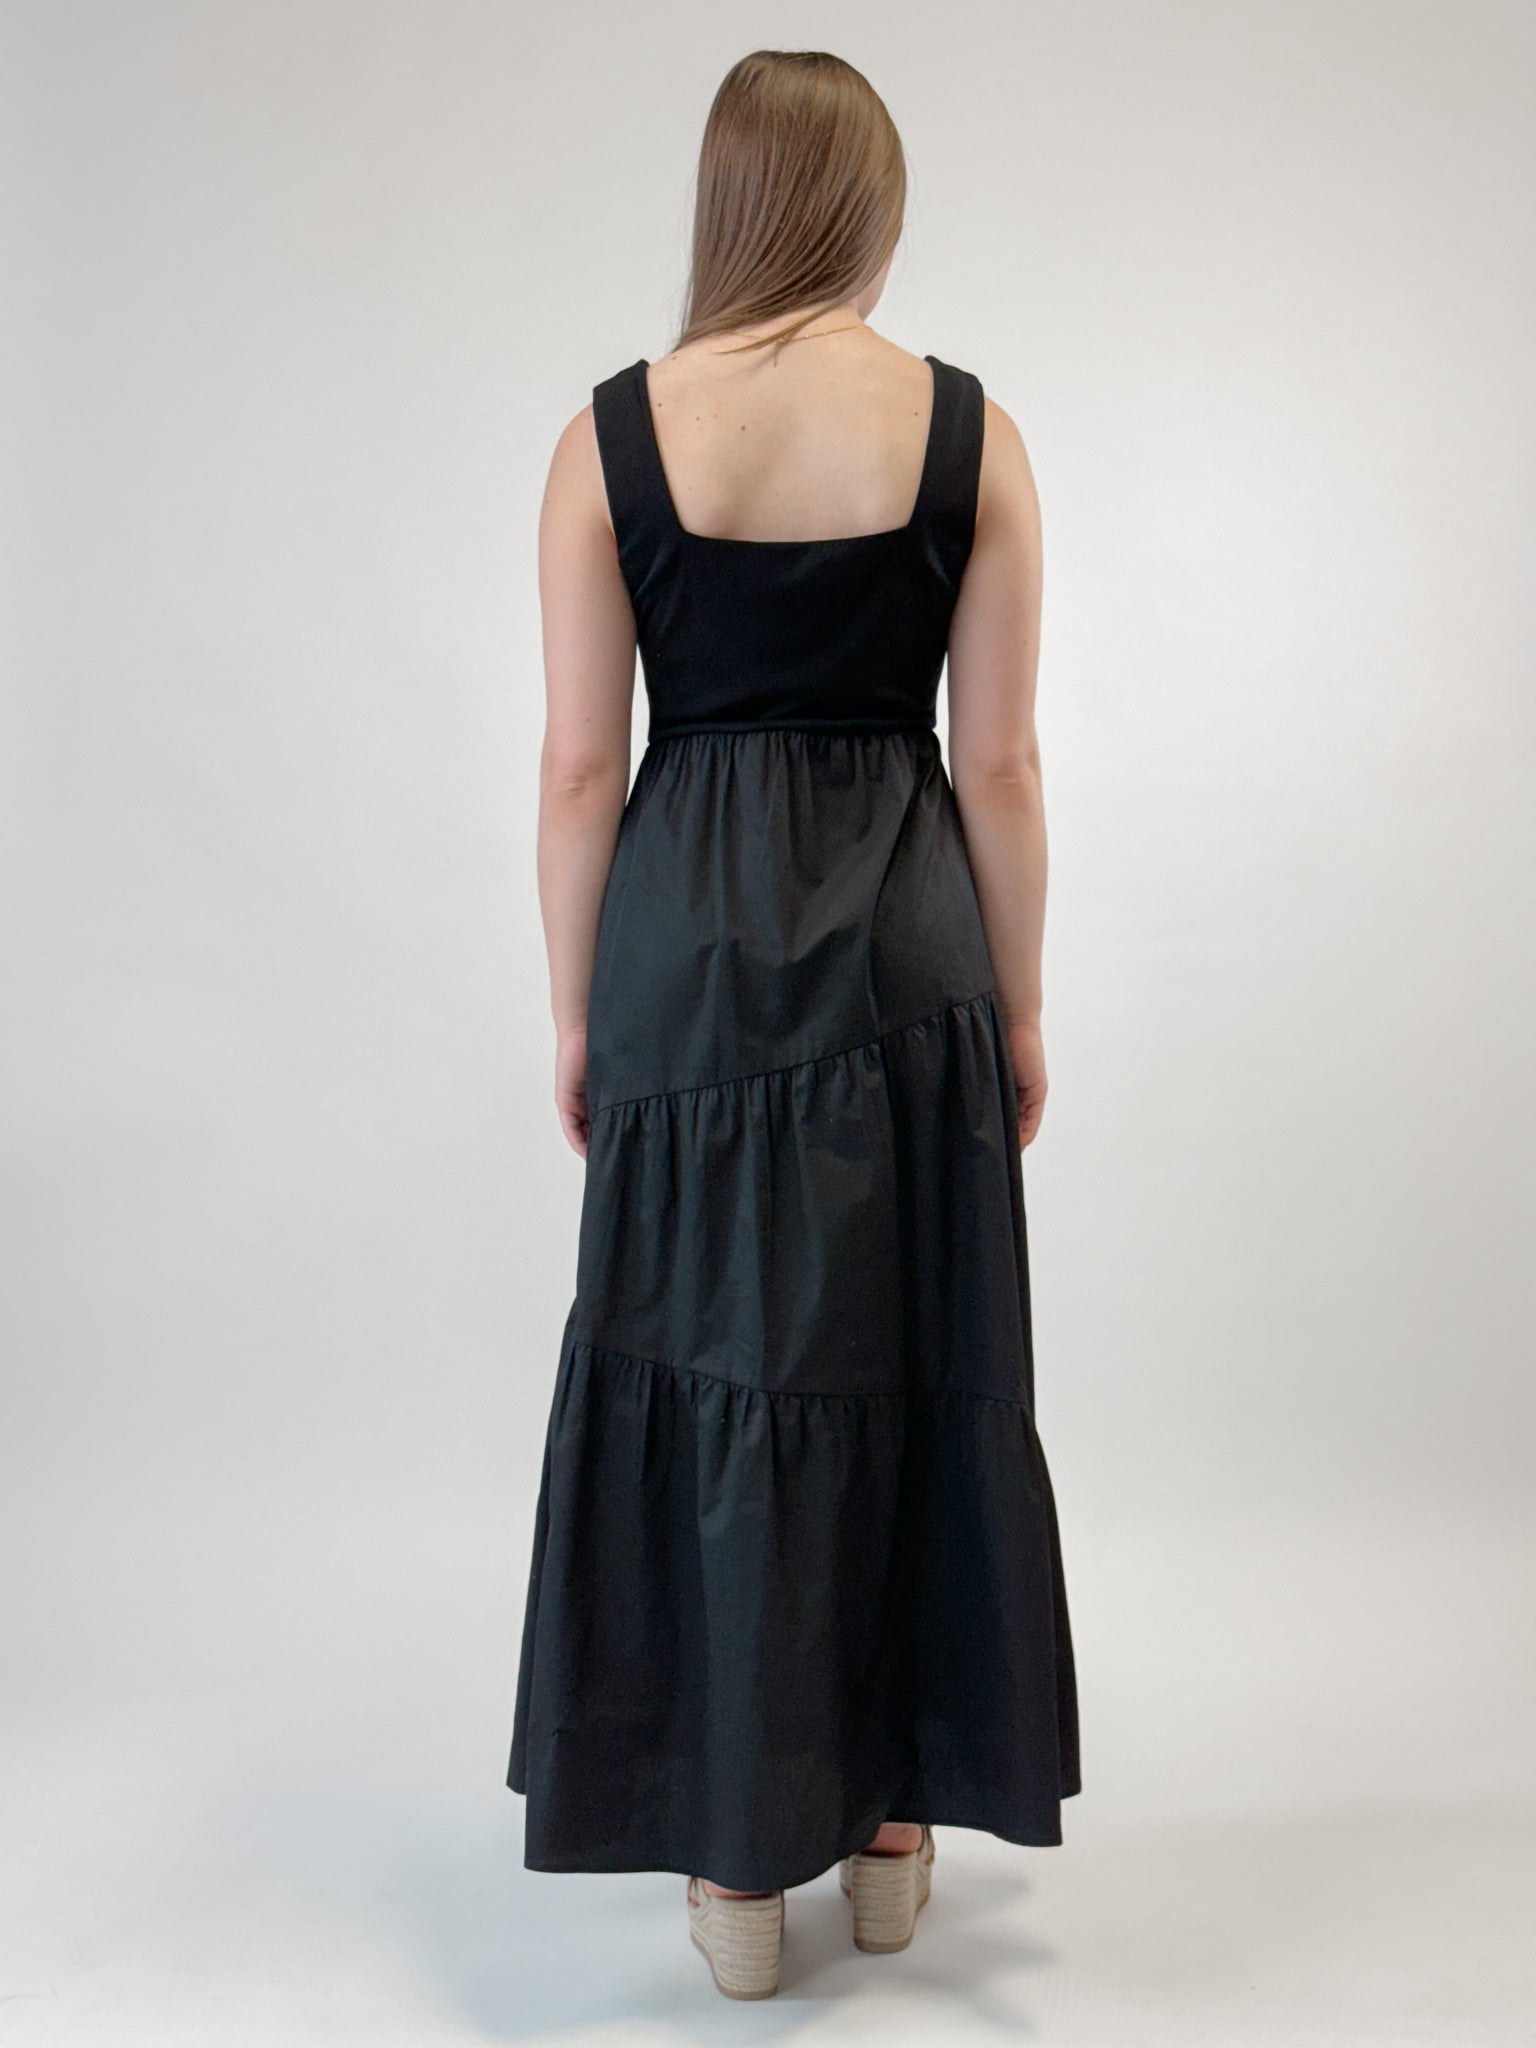 Square Neck Maxi Dress - Black